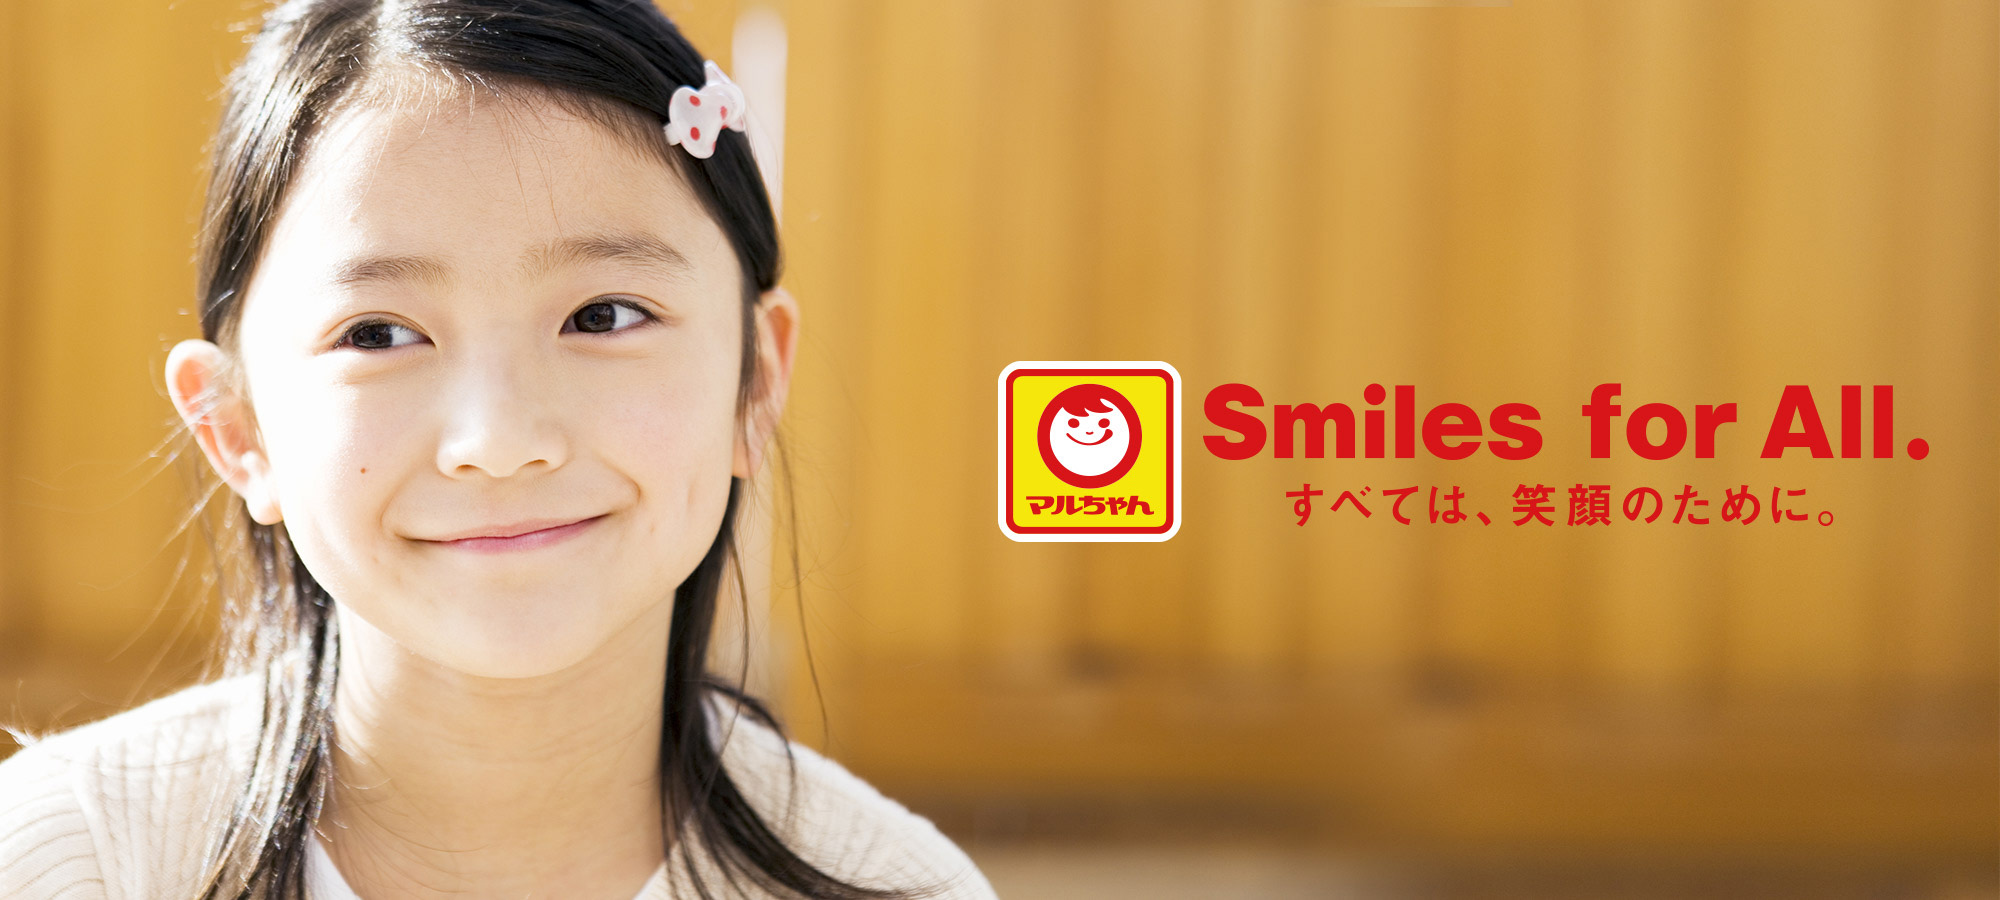 マルちゃん Smiles for All. すべては、笑顔のために。